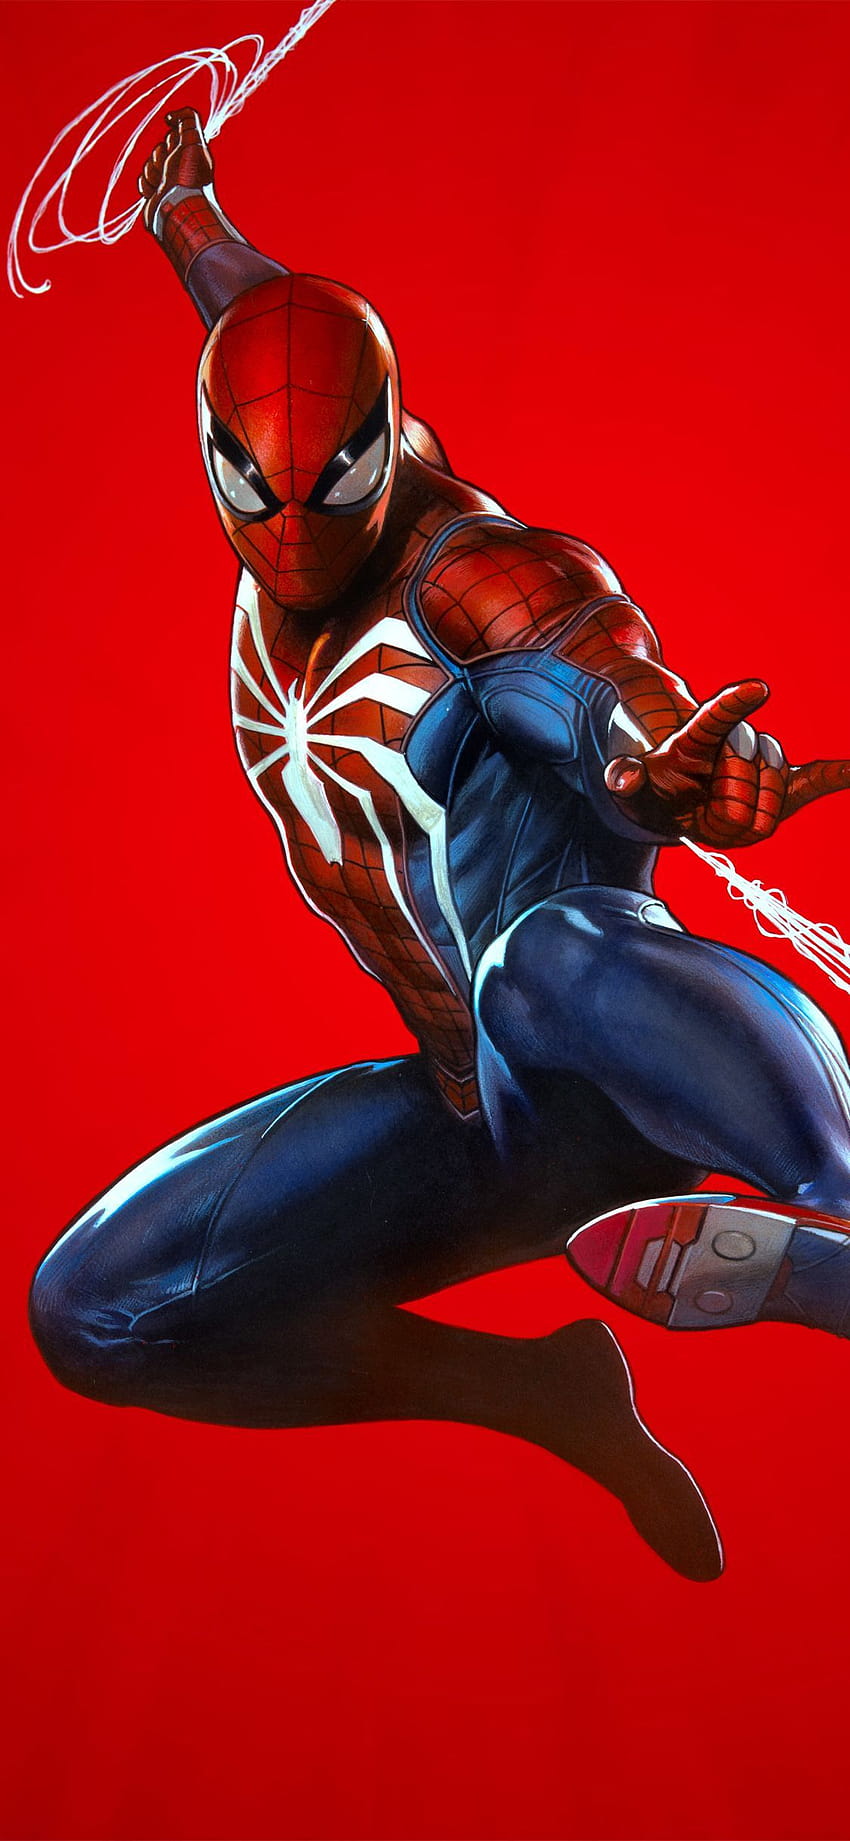 Hình nền Spider Man - Bộ hình nền Người Nhện đẹp - Download.com.vn